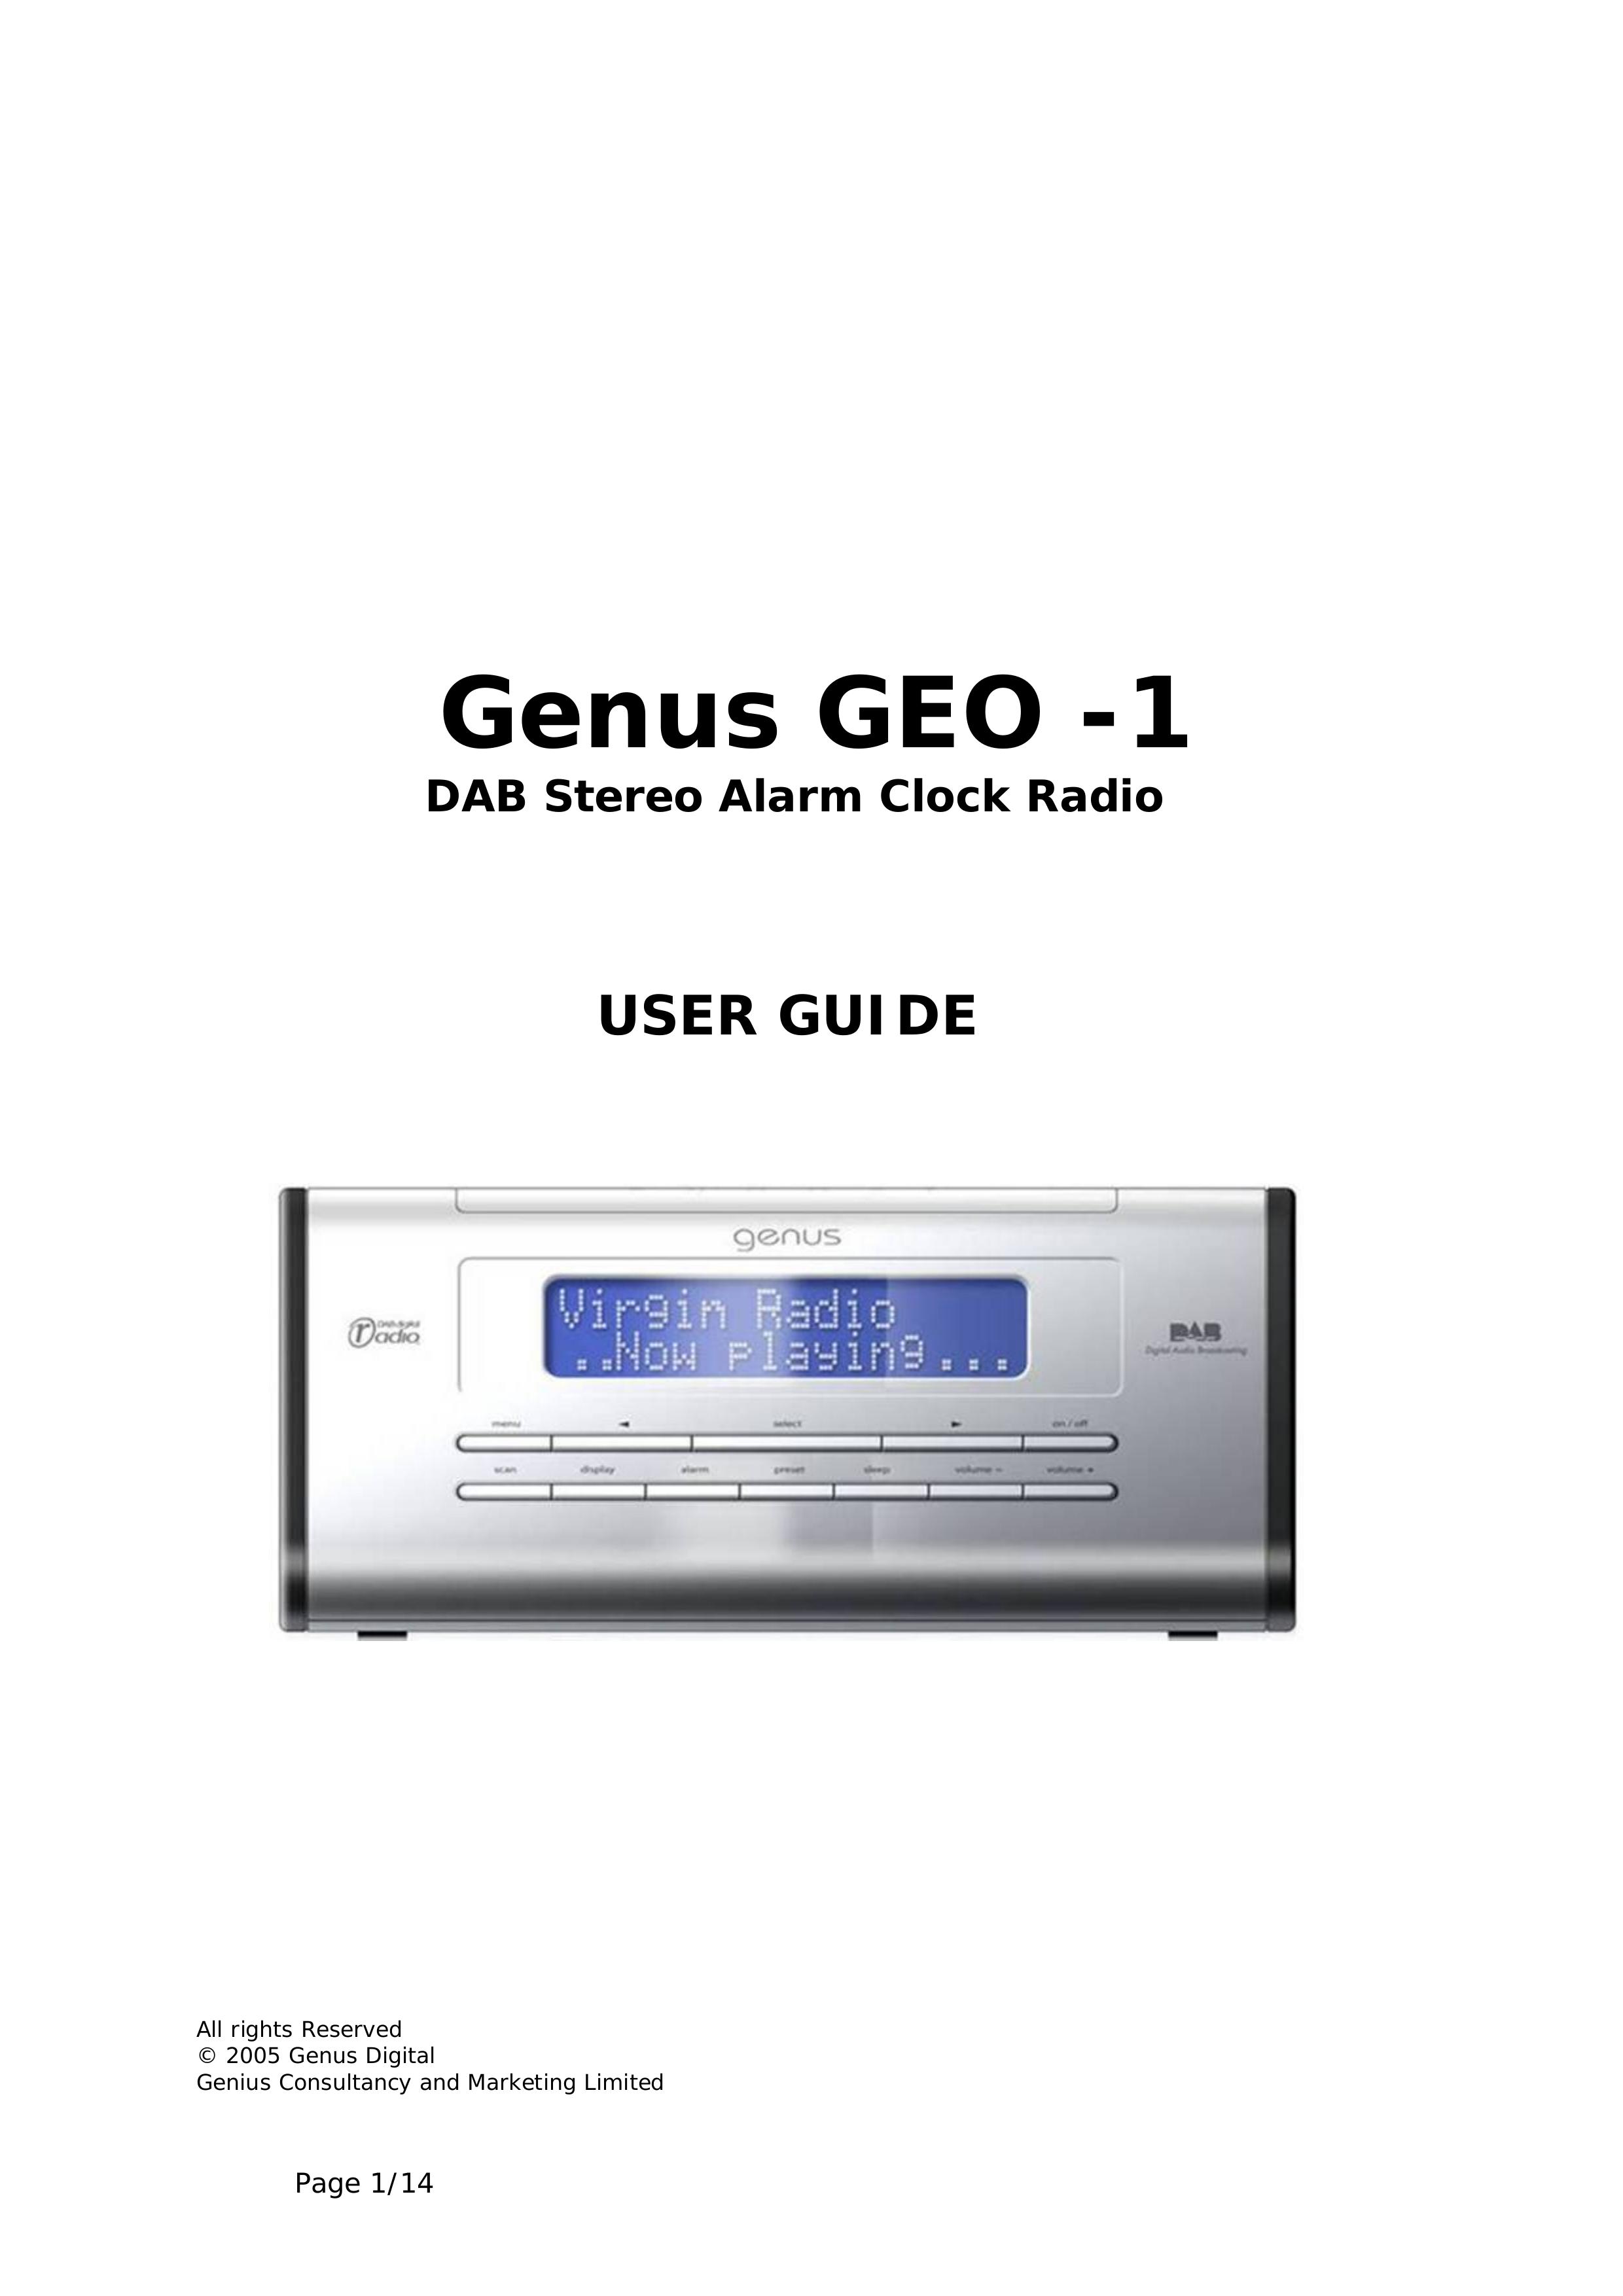 Genius GEO -1 Clock Radio User Manual